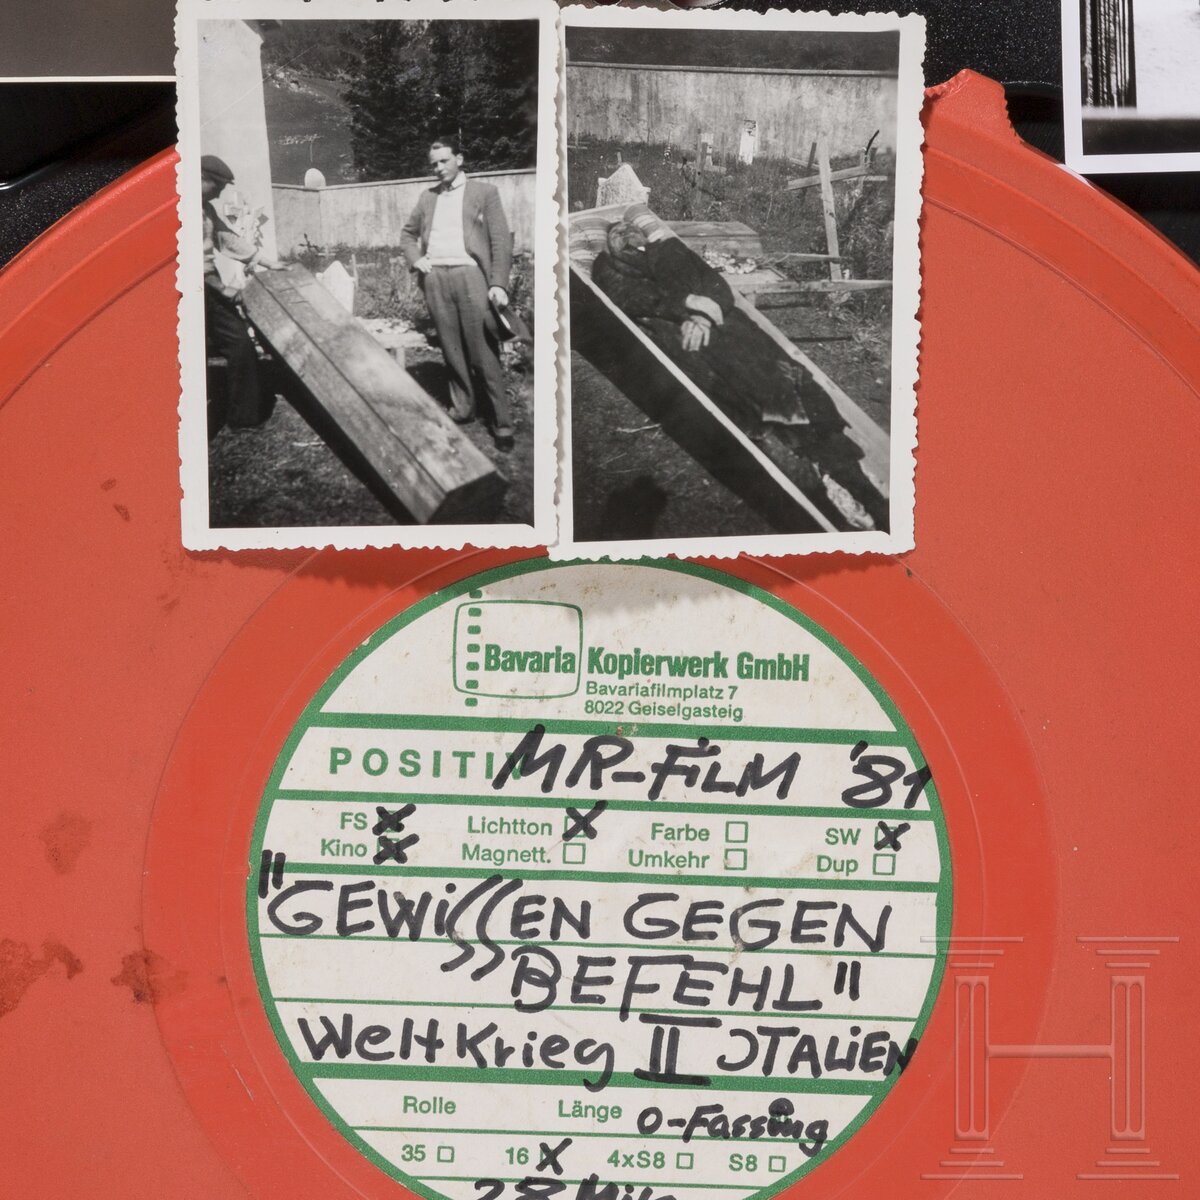 Widerstand im 3. Reich - 16 mm-Film "Gewissen gegen Befehl", Pfarrer Don Domenico Mercante - Image 3 of 3